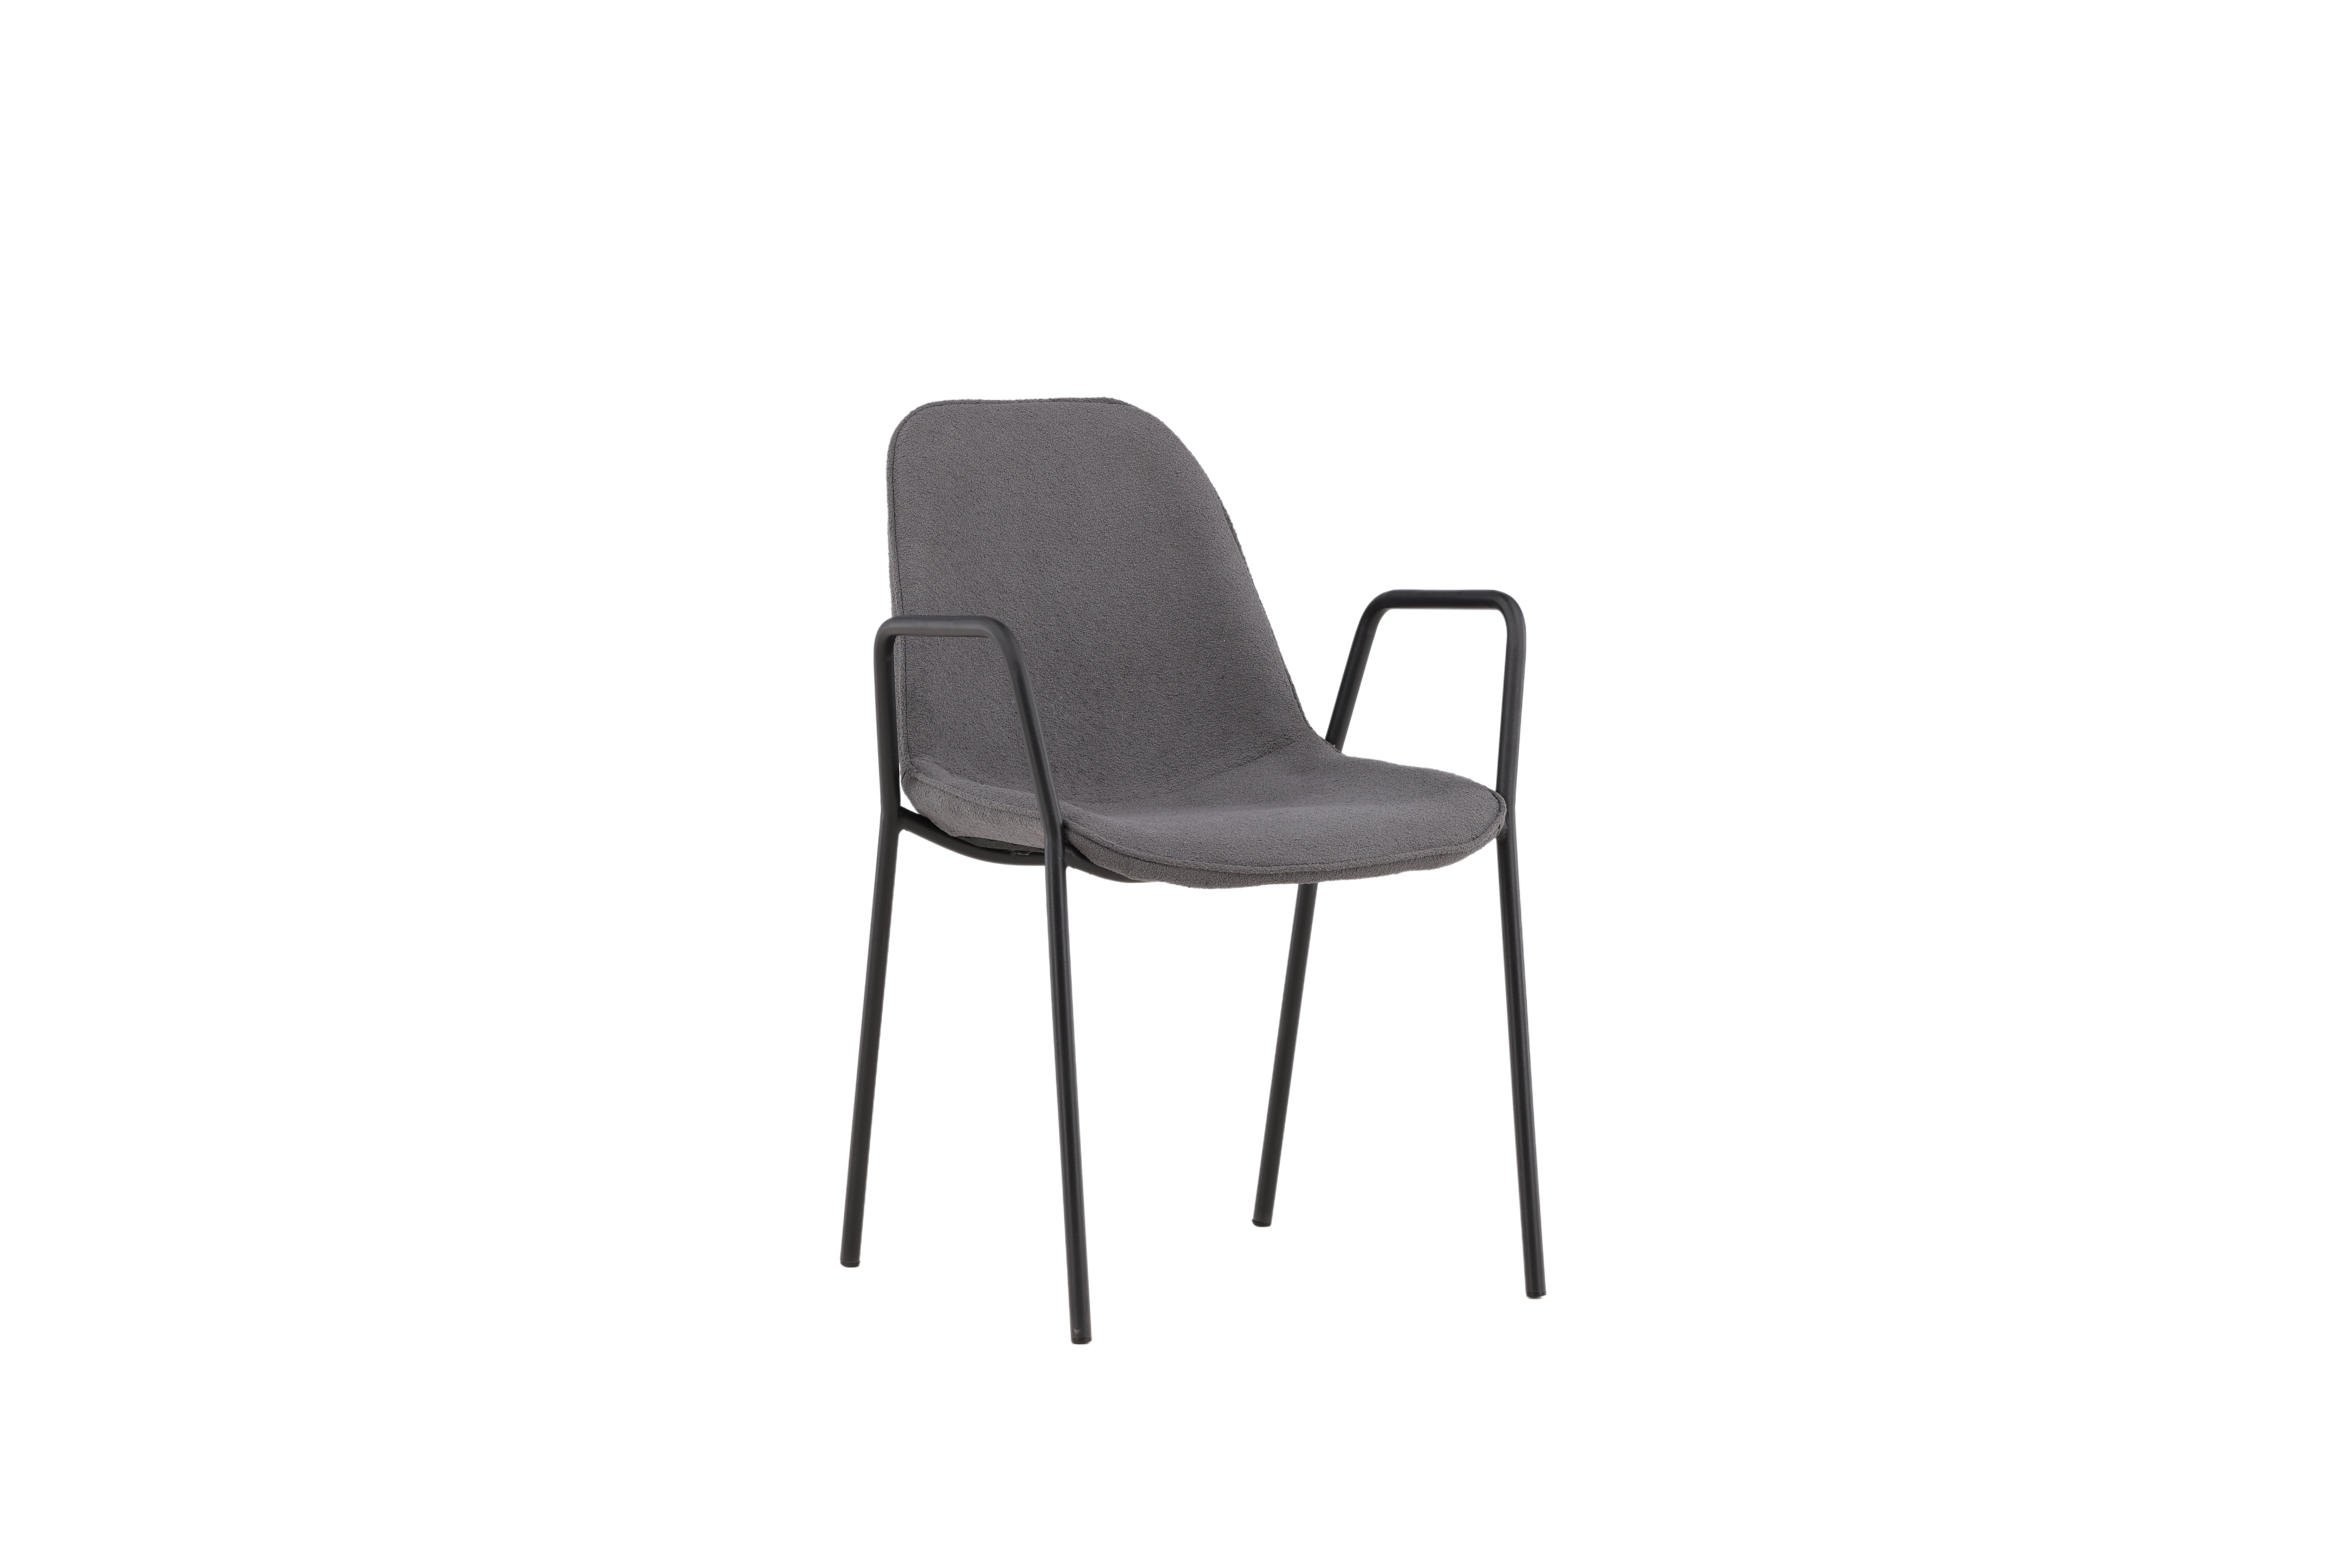 VIND COLLECTION Klädesholmen spisebordsstol, m. armlæn - mørkegrå bouclé stof og sort stål